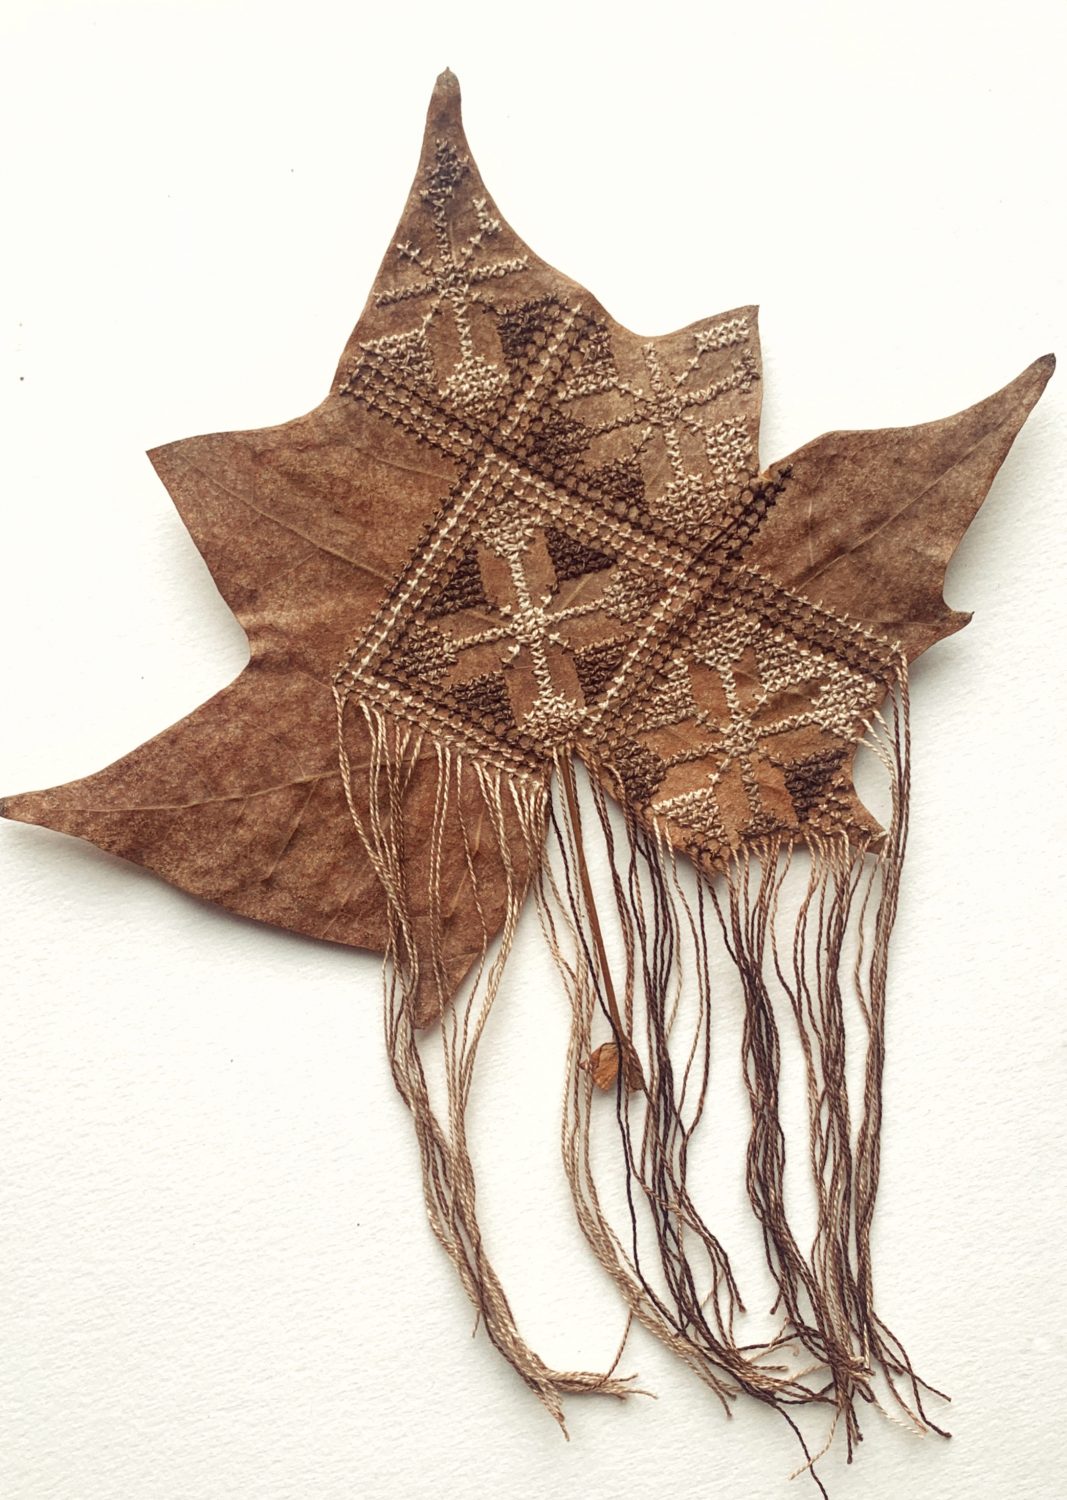 Zsófia Száz - Stitching into leaves